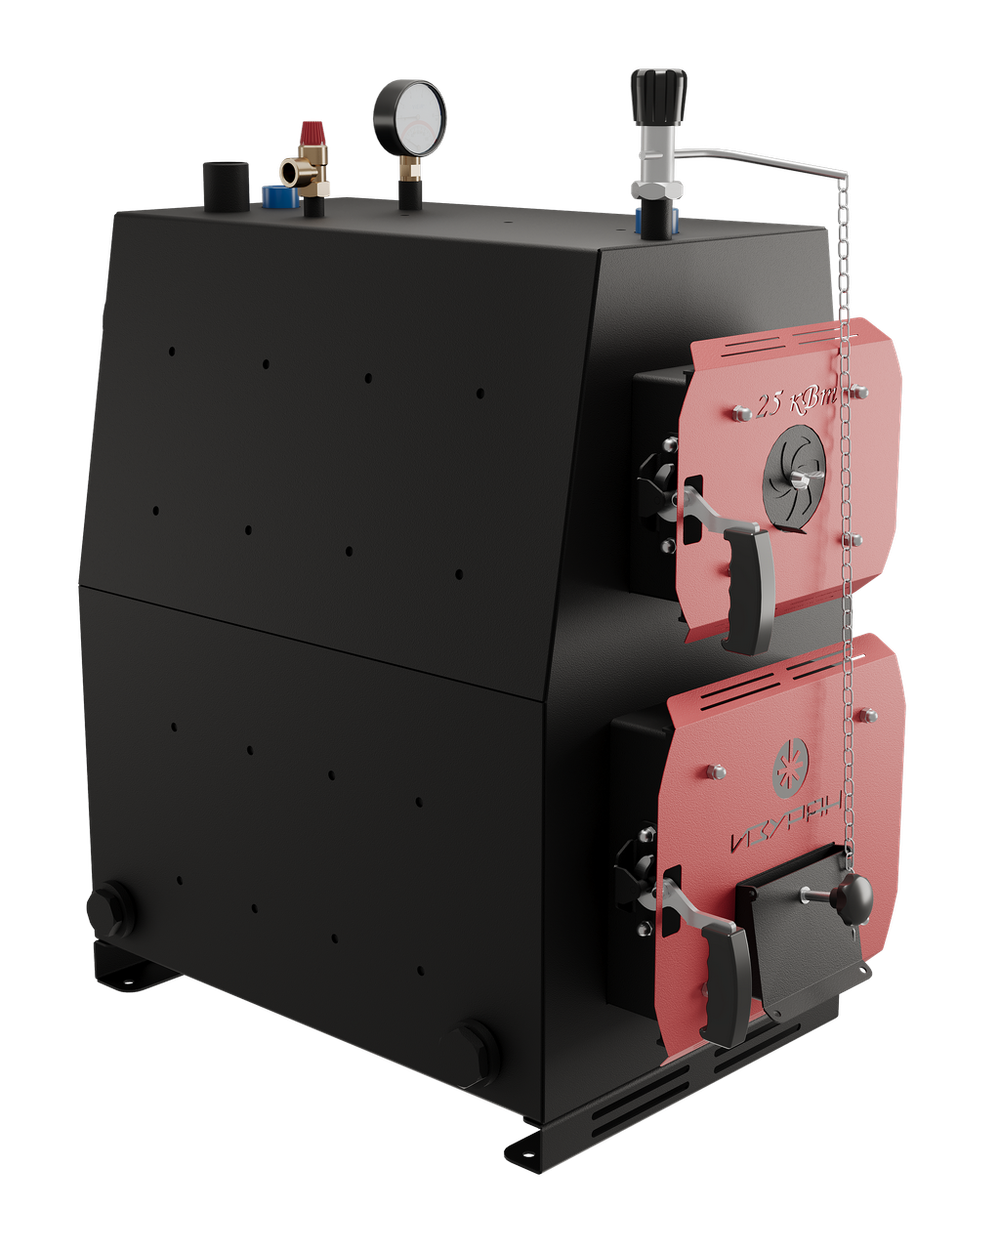 Твердотопливный котел длительного горения Изуран-80 на 80 кВт. Отапливаемое помещение до 2160 куб.м. Производитель - Изуран